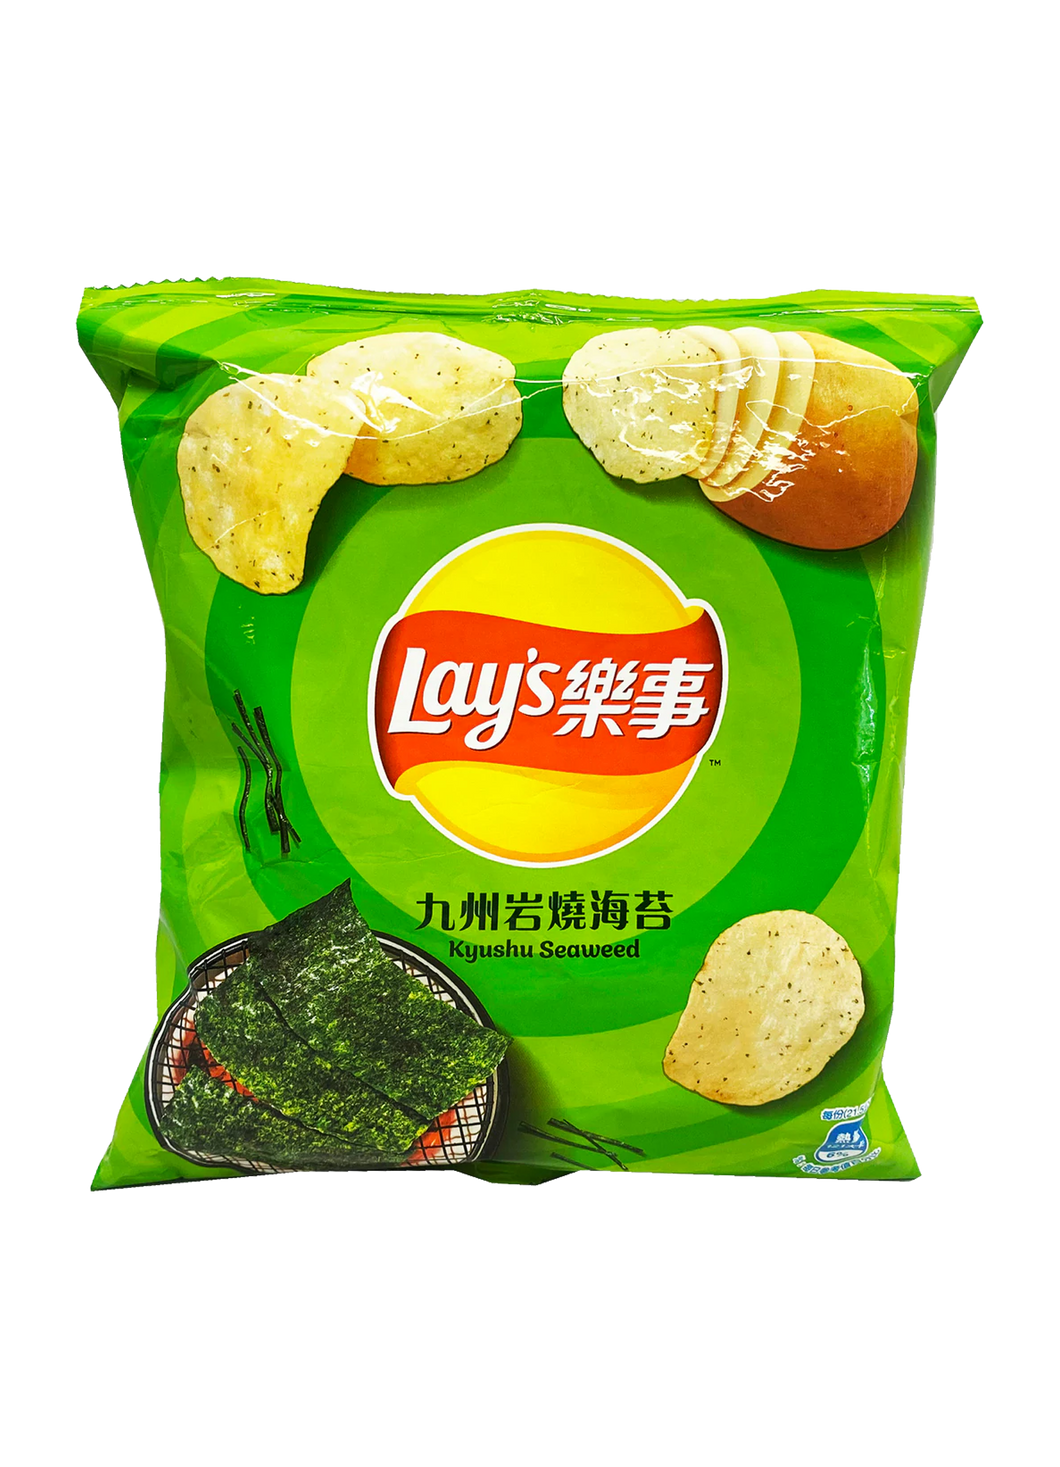 Lay's Kyushu Seaweed 43g